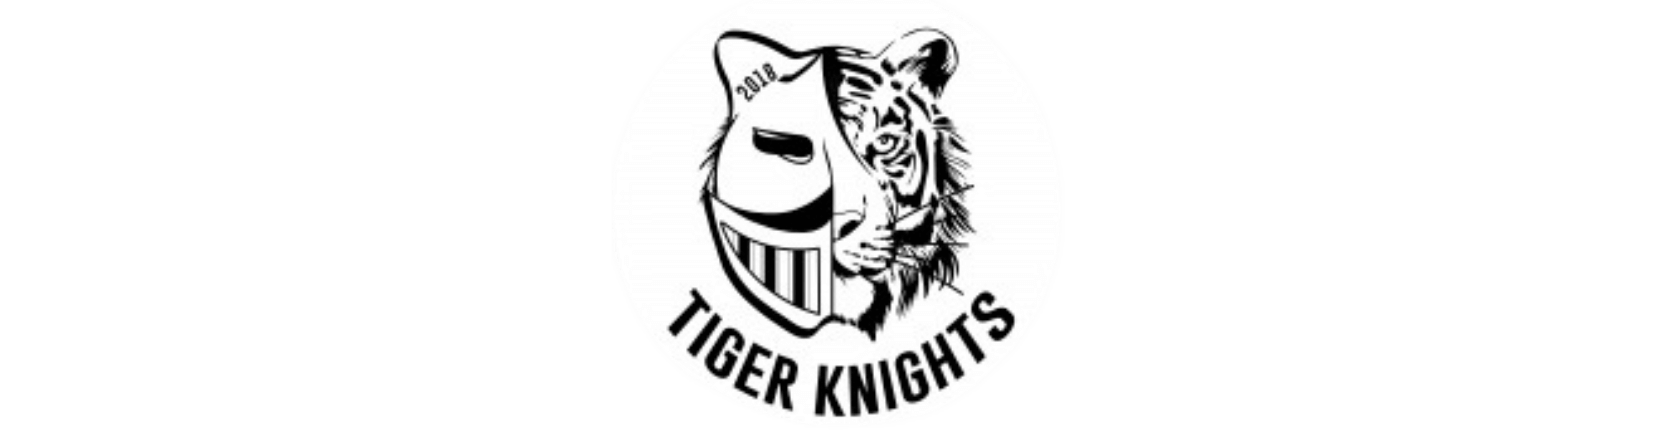 tiger knights